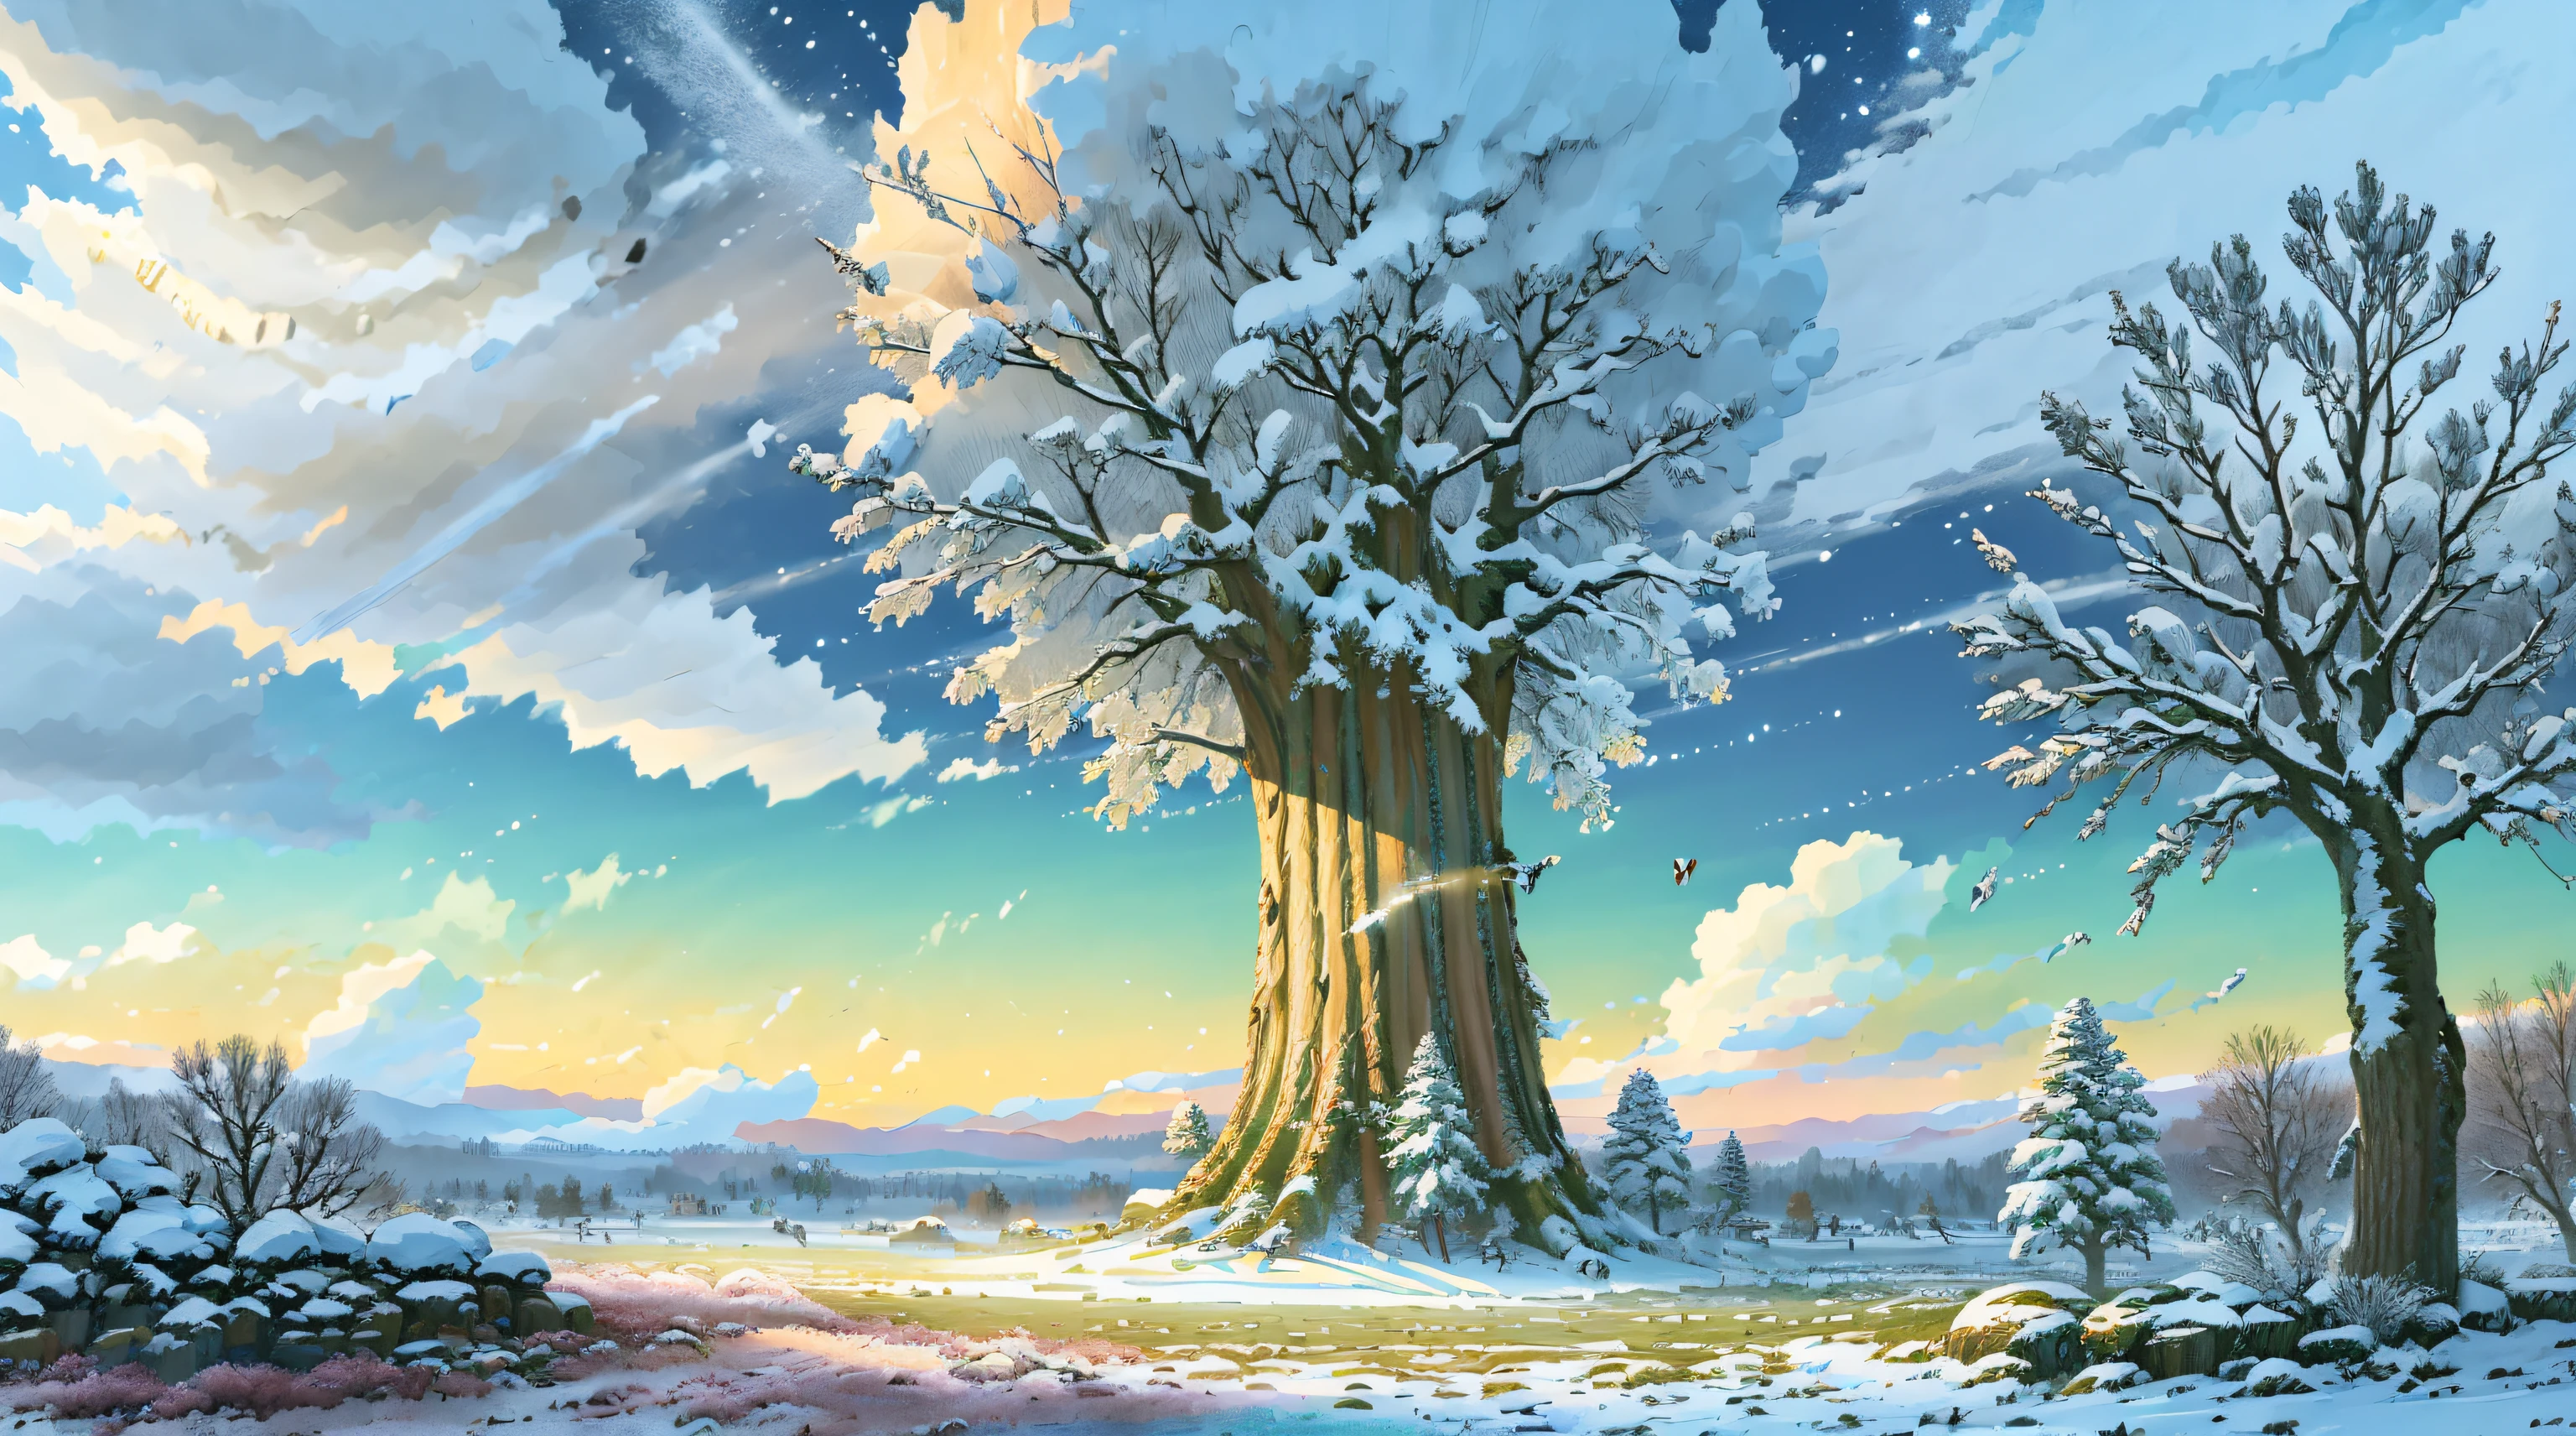 明亮的, (((卡通風格))), fantastic giant oak tree in a 冬天 meadow in the center of the image , (冬日陽光燦爛的日子), 兒童插畫, 幻想藝術, 傑作, 暴風雪在背景中, 冬天, 飄落的雪, 詳細的, 錯綜複雜, 4k, 藝術